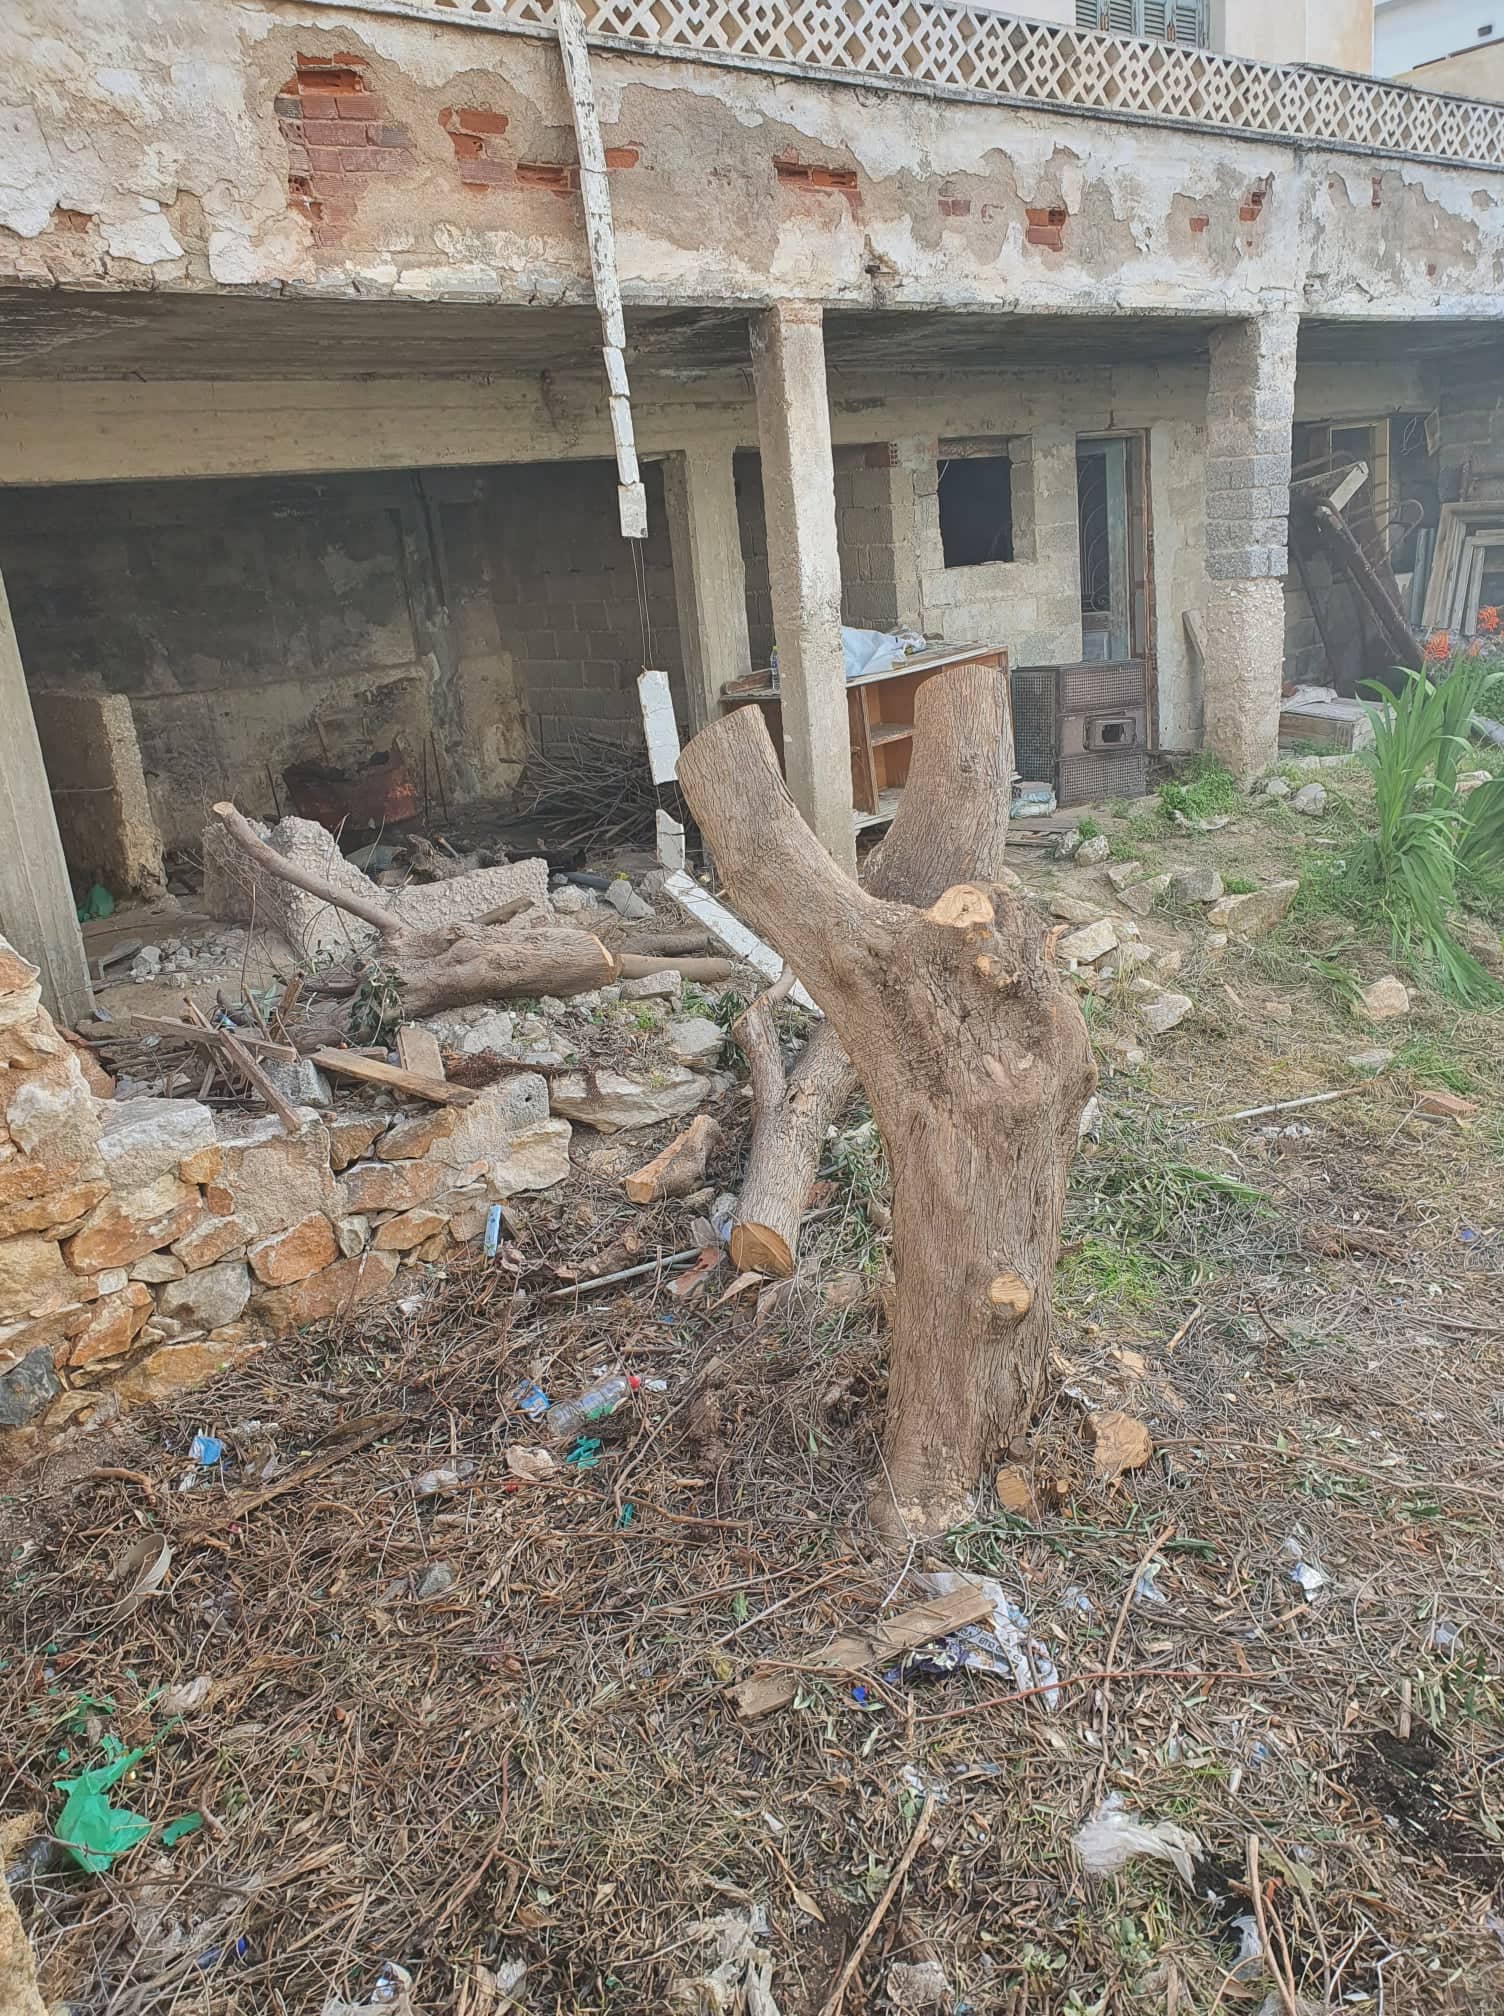 Χώρα Νάξου: Παραμελημένες ιδιόκτητες κατοικίες και οικόπεδα - Όταν ο υπόχρεος (ιδιοκτήτης) δεν κάνει αυτό που πρέπει...